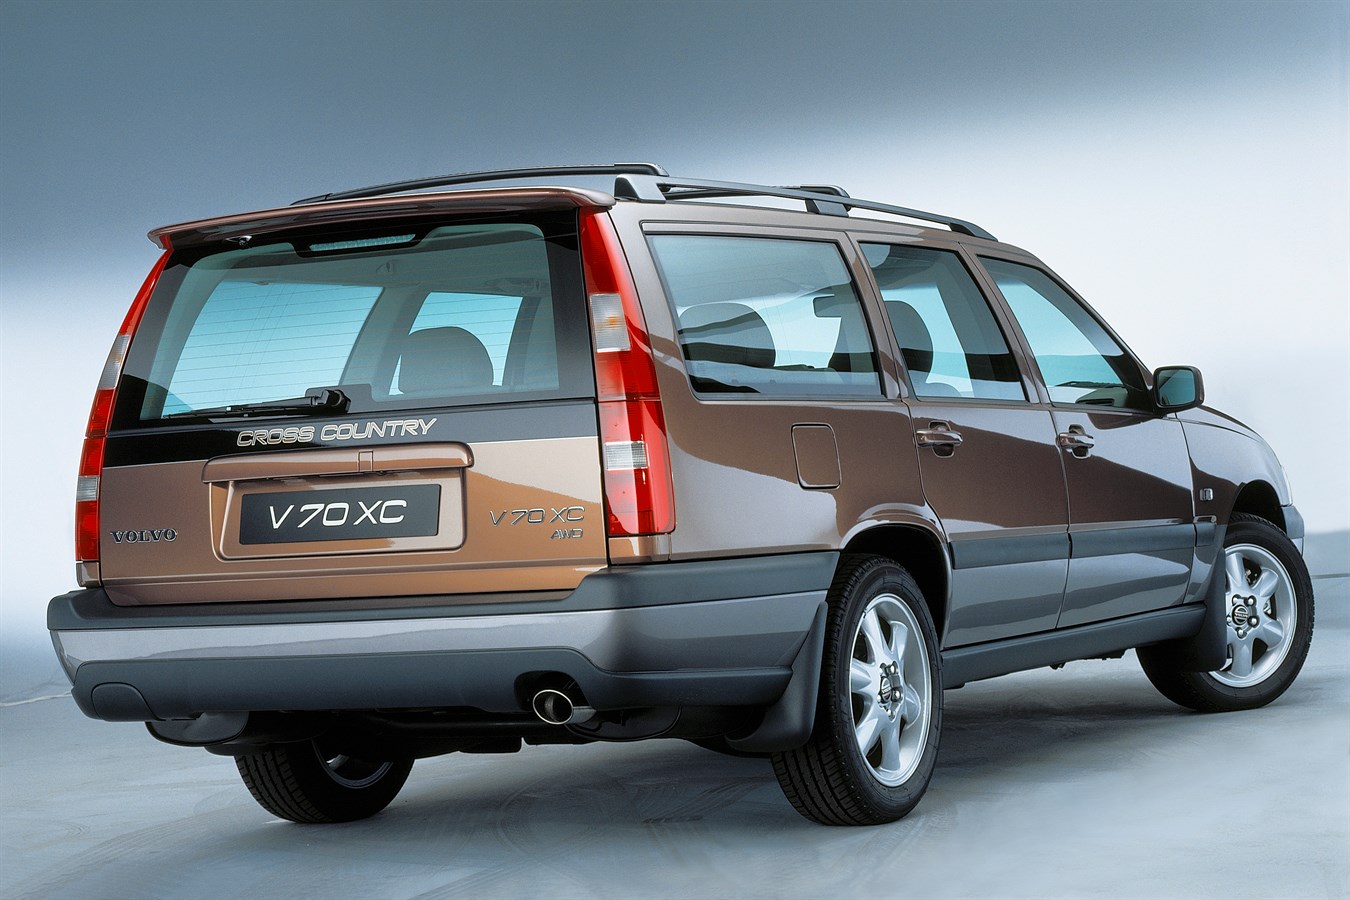 VOLVO V70 GEN I/V70XC (1996-2000) - Volvo Car USA Newsroom